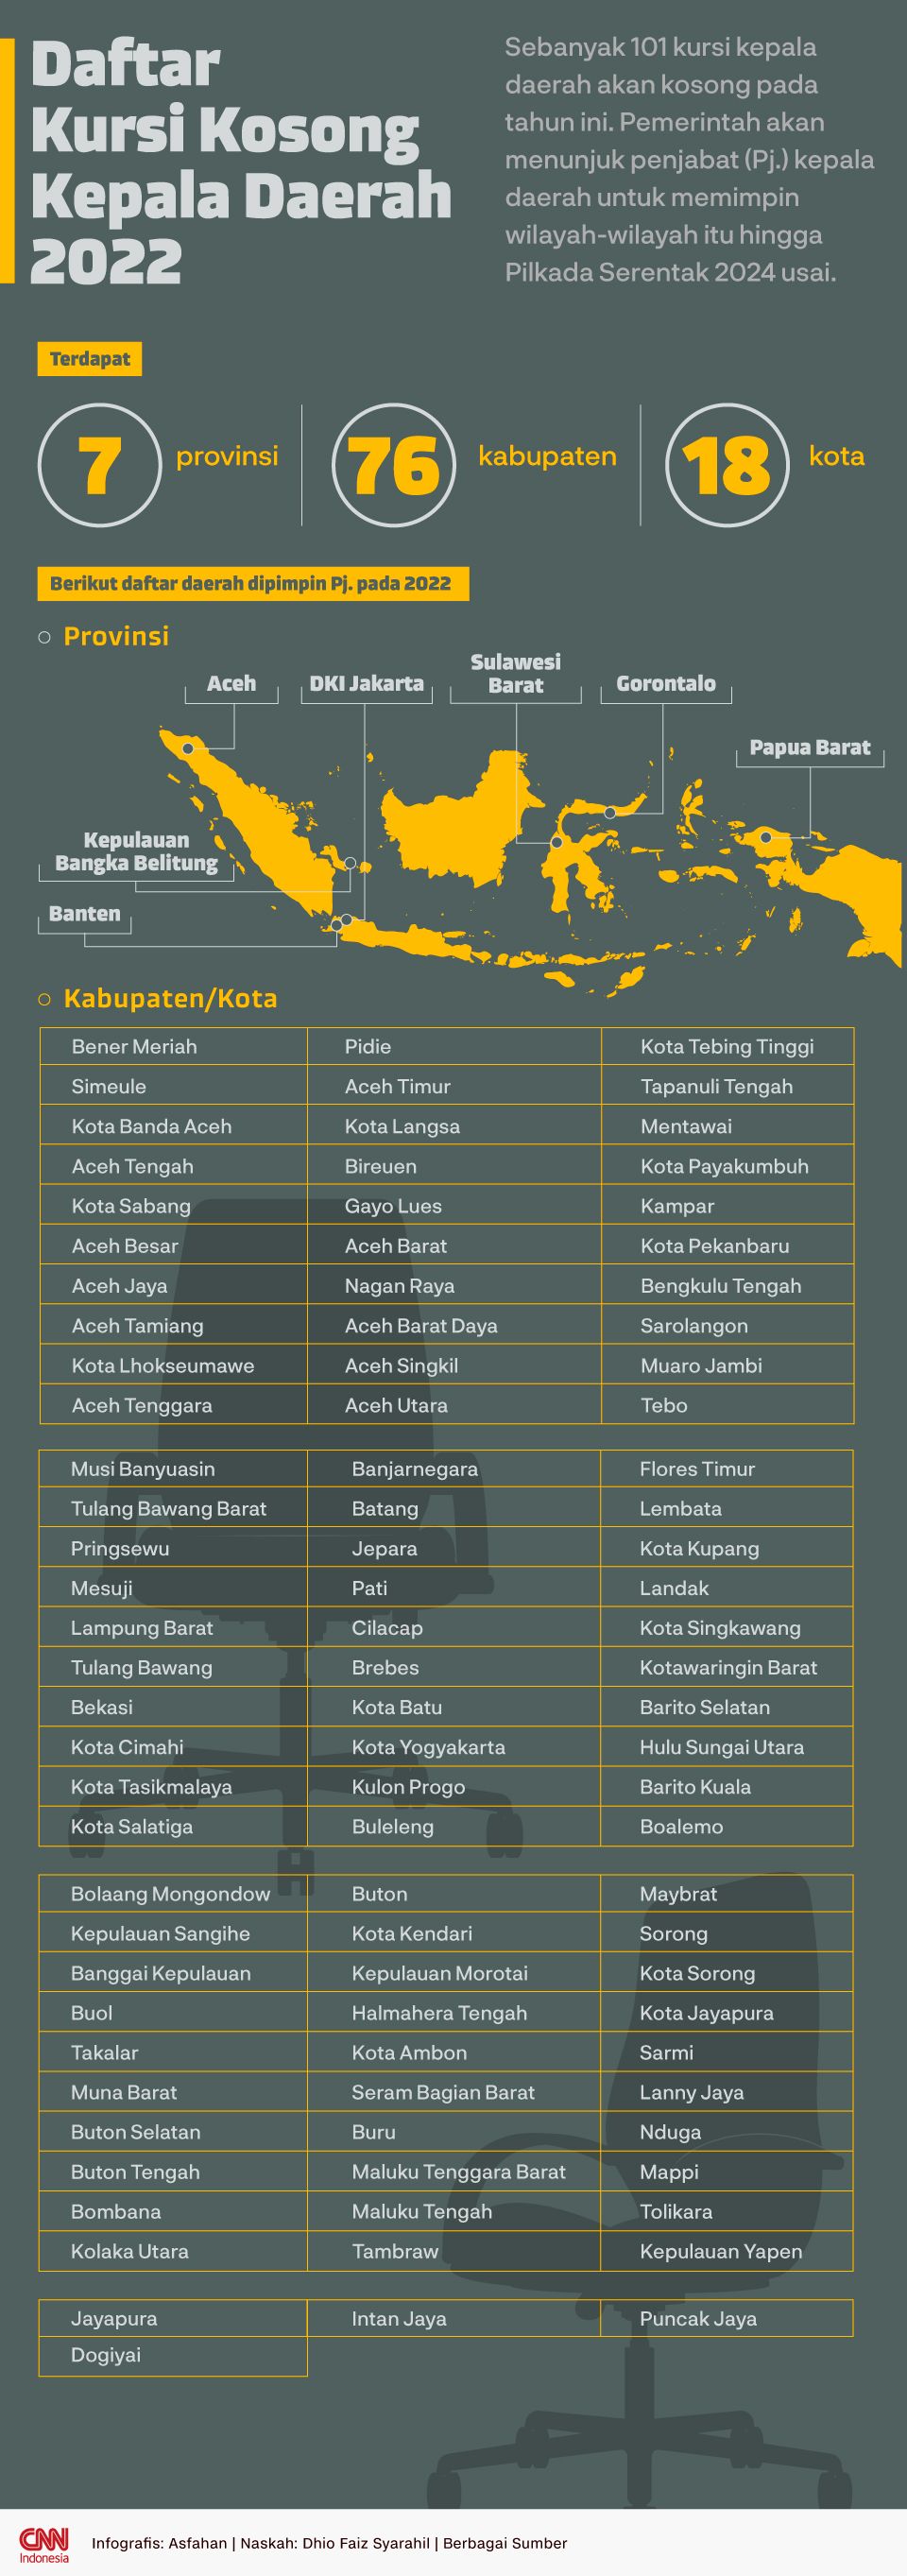 Infografis Daftar Kursi Kosong Kepala Daerah 2022